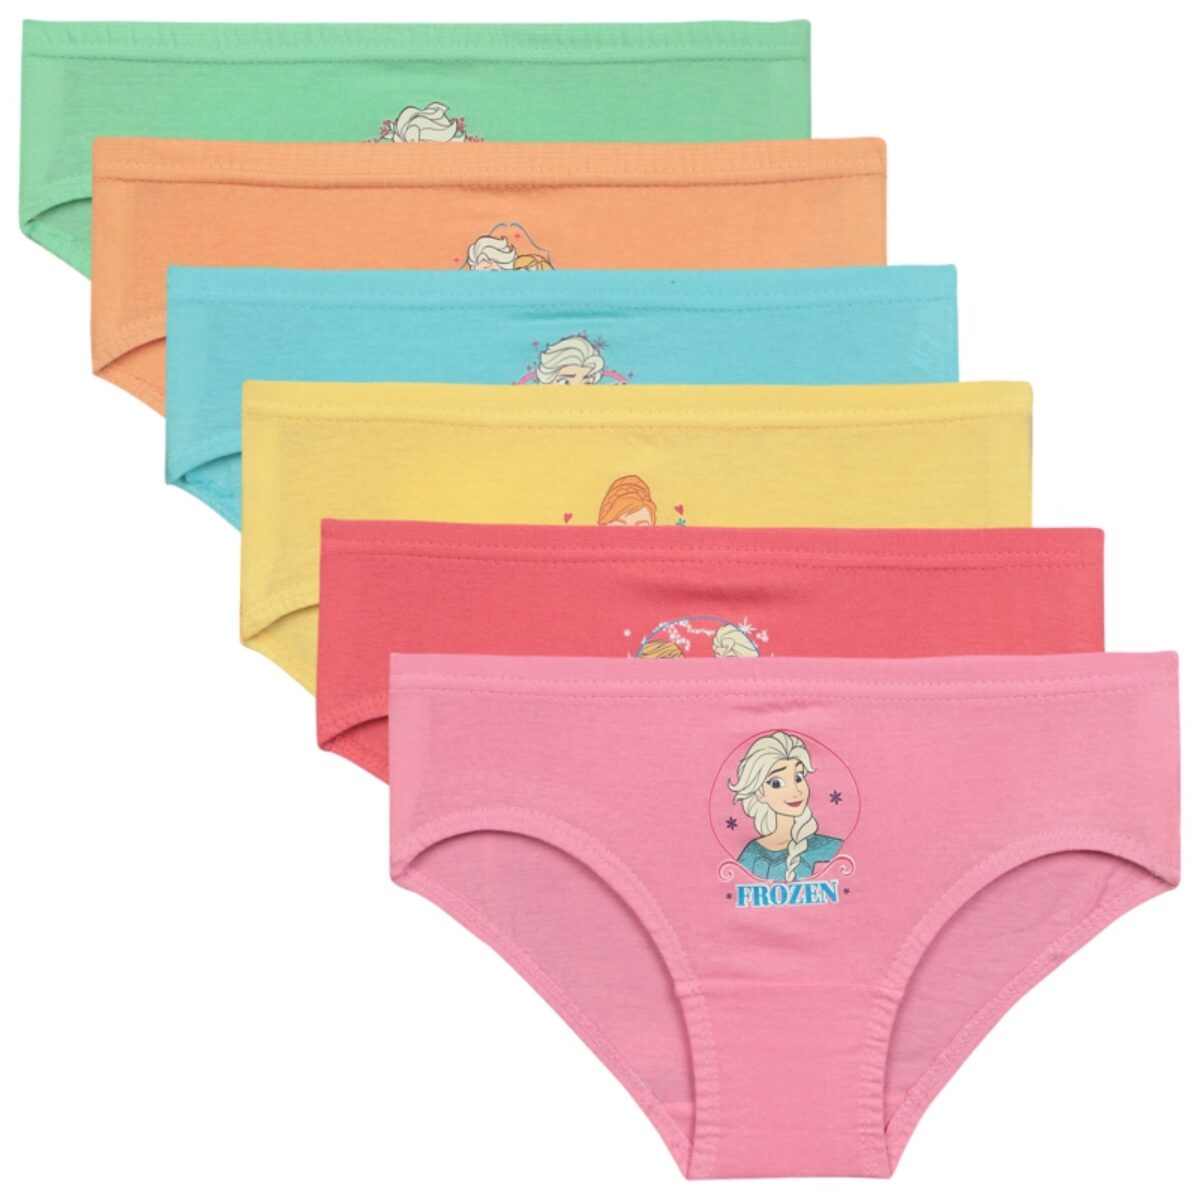 Frozen Toddler Girls Underwear, 6 … curated on LTK